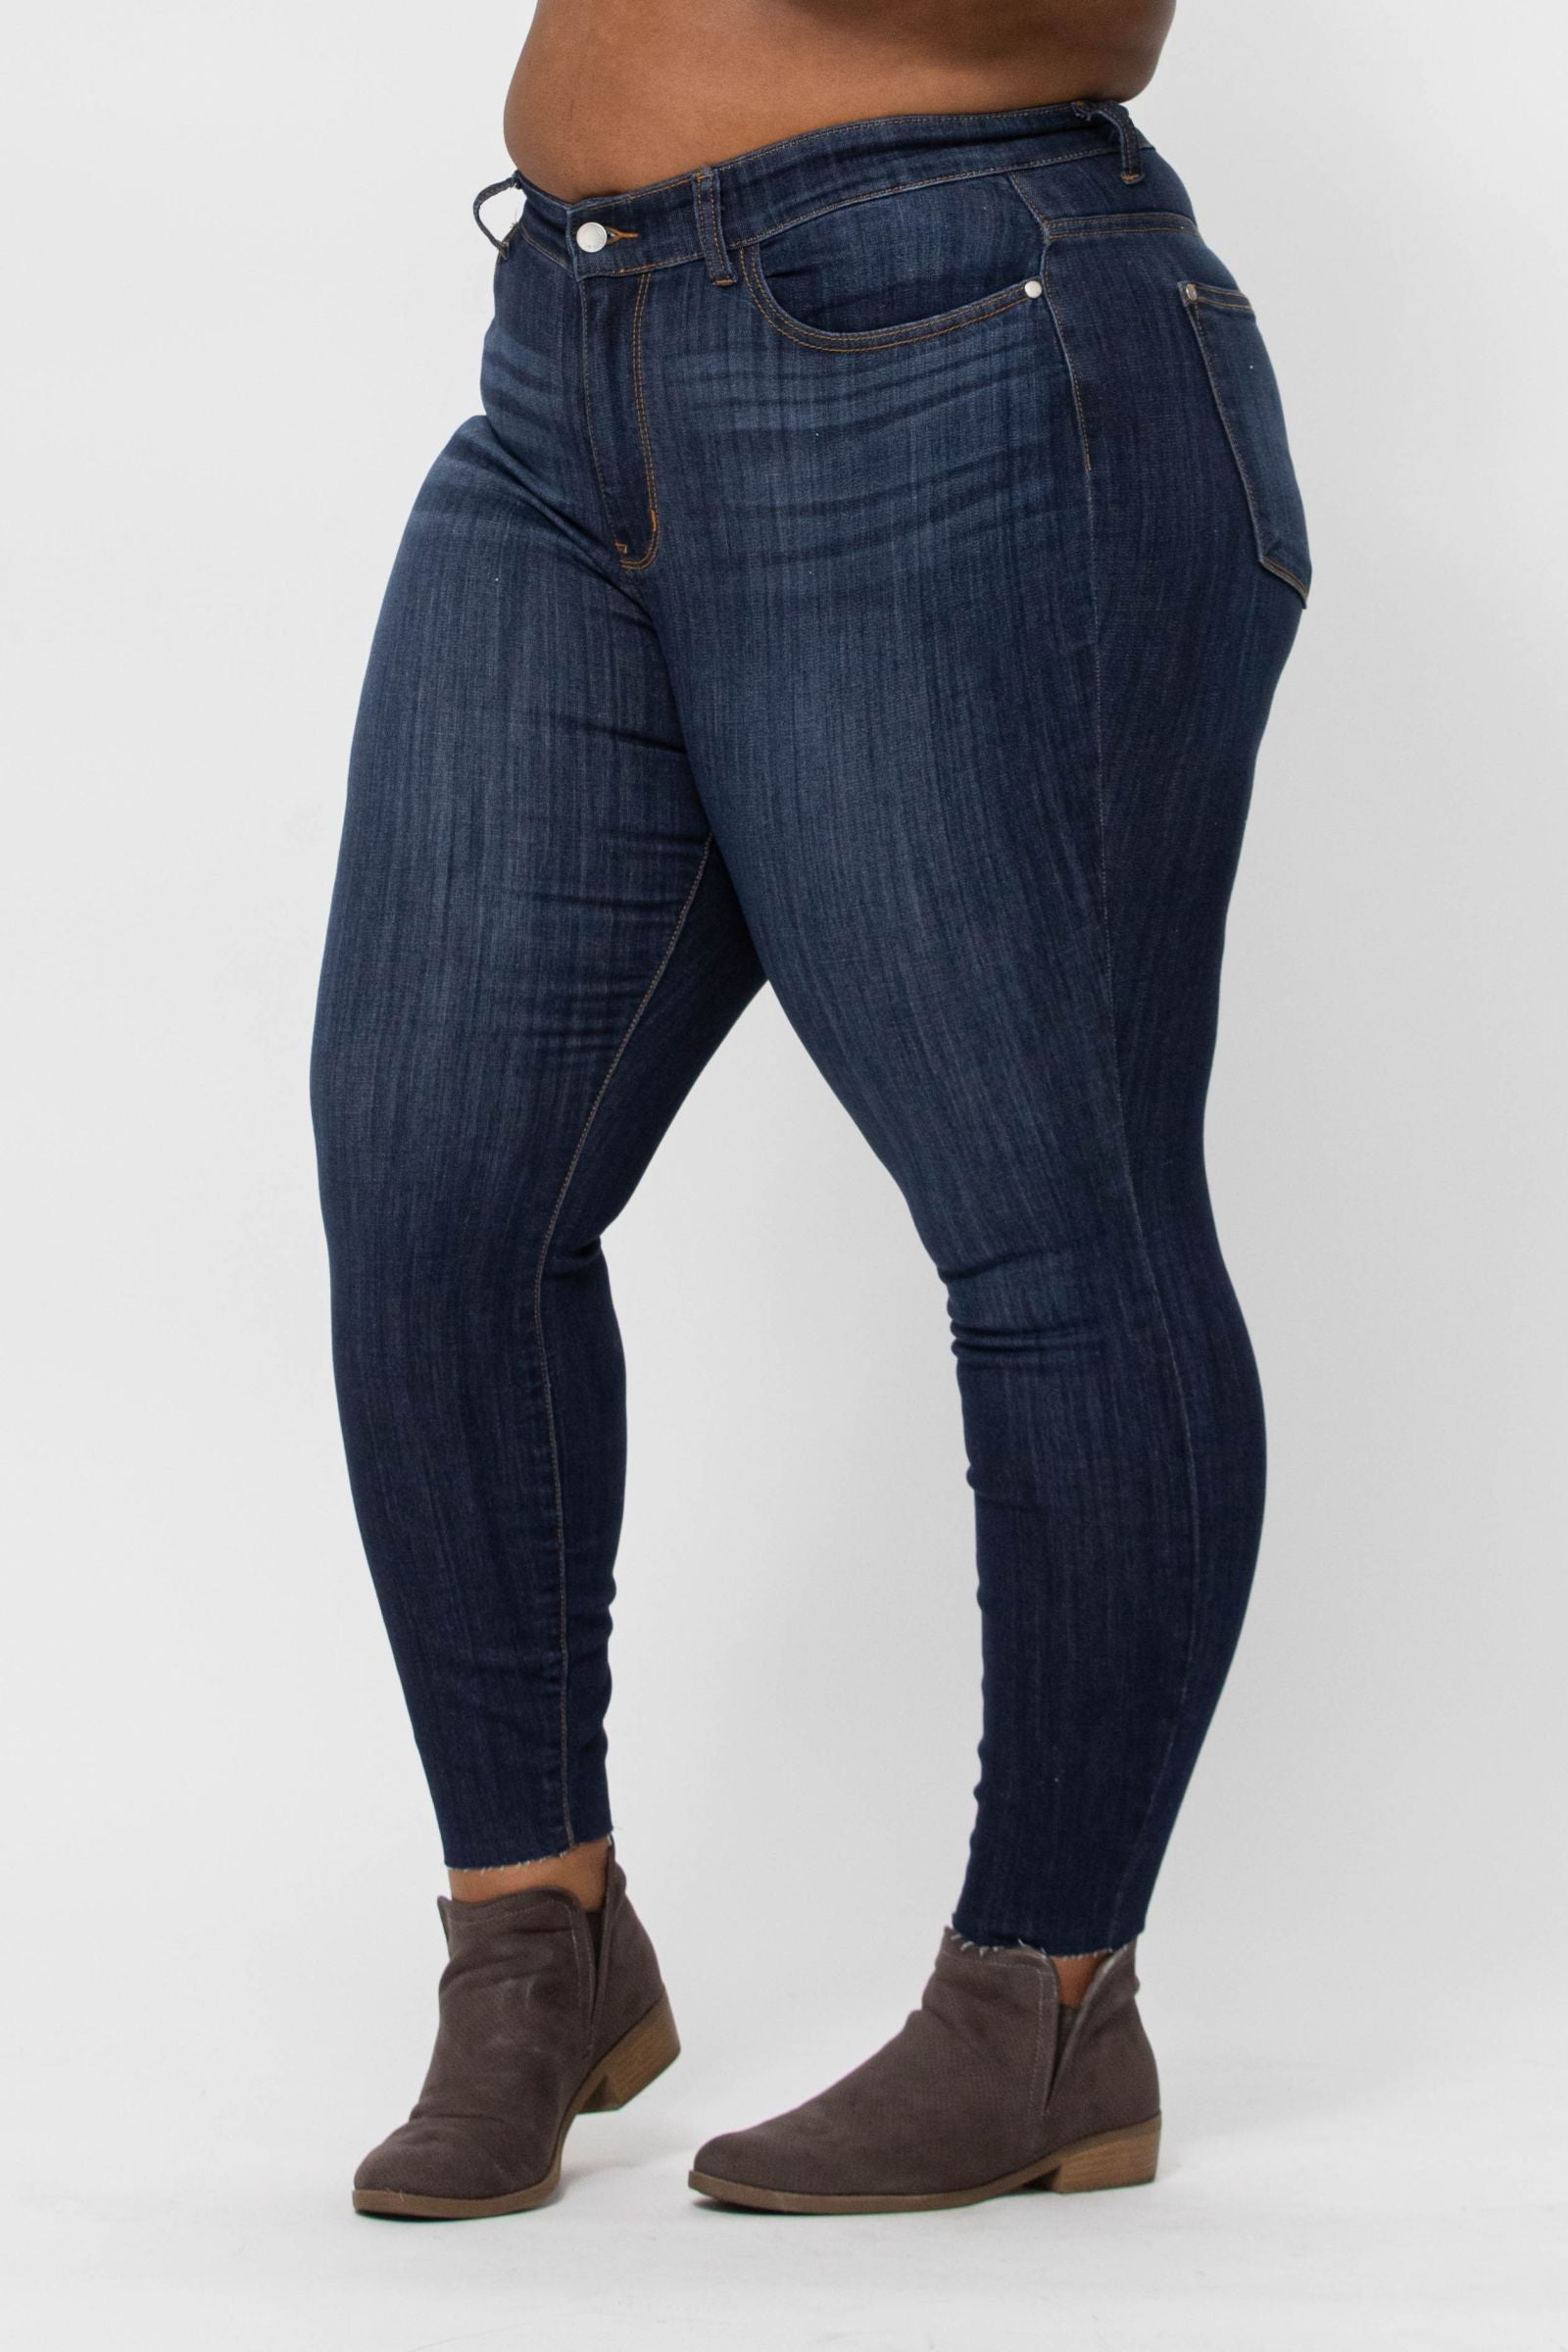 judy blue mid rise classic skinny jeans unfinished hem JB82201PL14W-24W DK